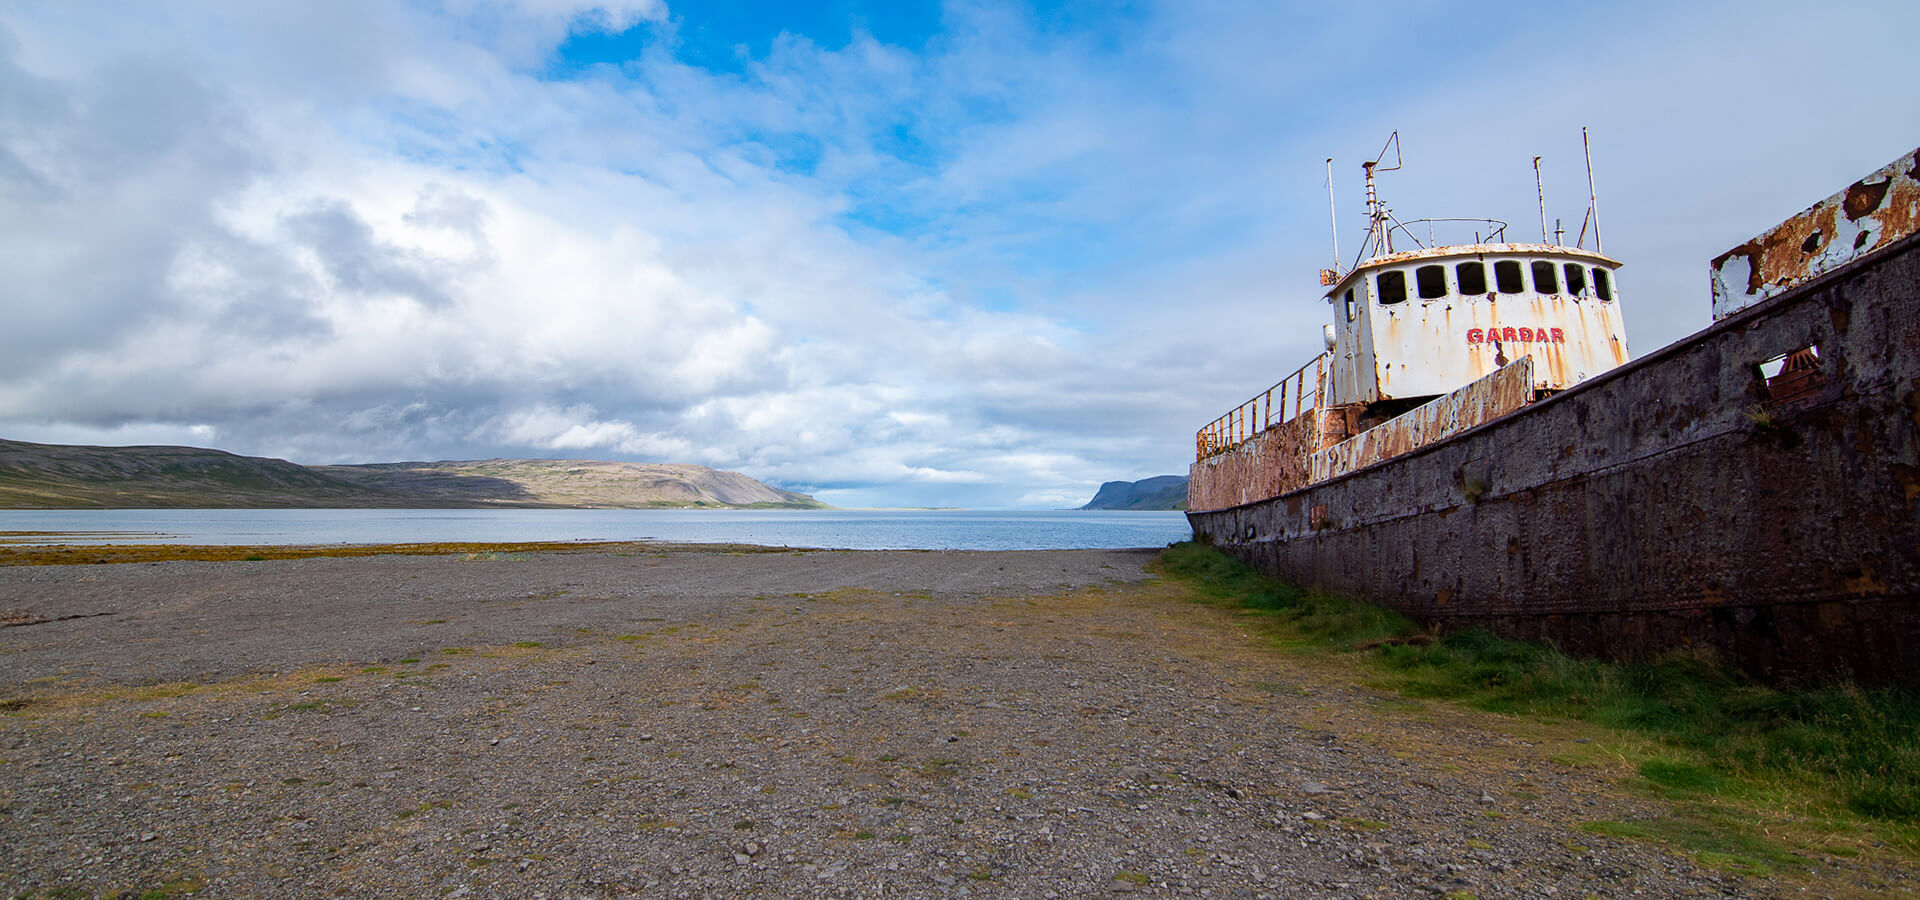 barco abandonado fiordos oeste